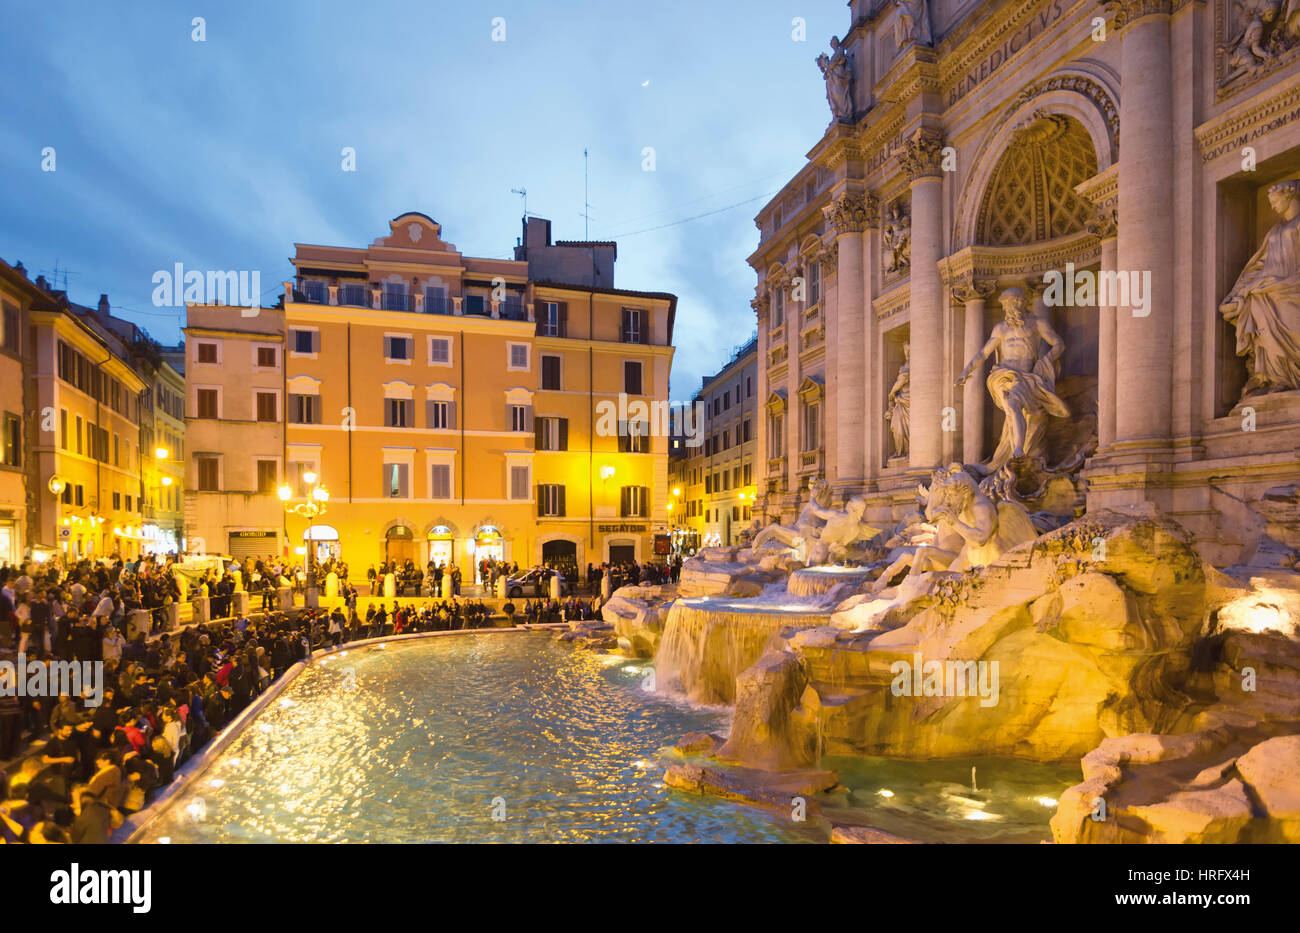 Rome, Italie. La fontaine de Trevi baroque du xviiie siècle conçu par Nicola Salvi. Le centre historique de Rome est un UNESCO World Heritage Site. Banque D'Images